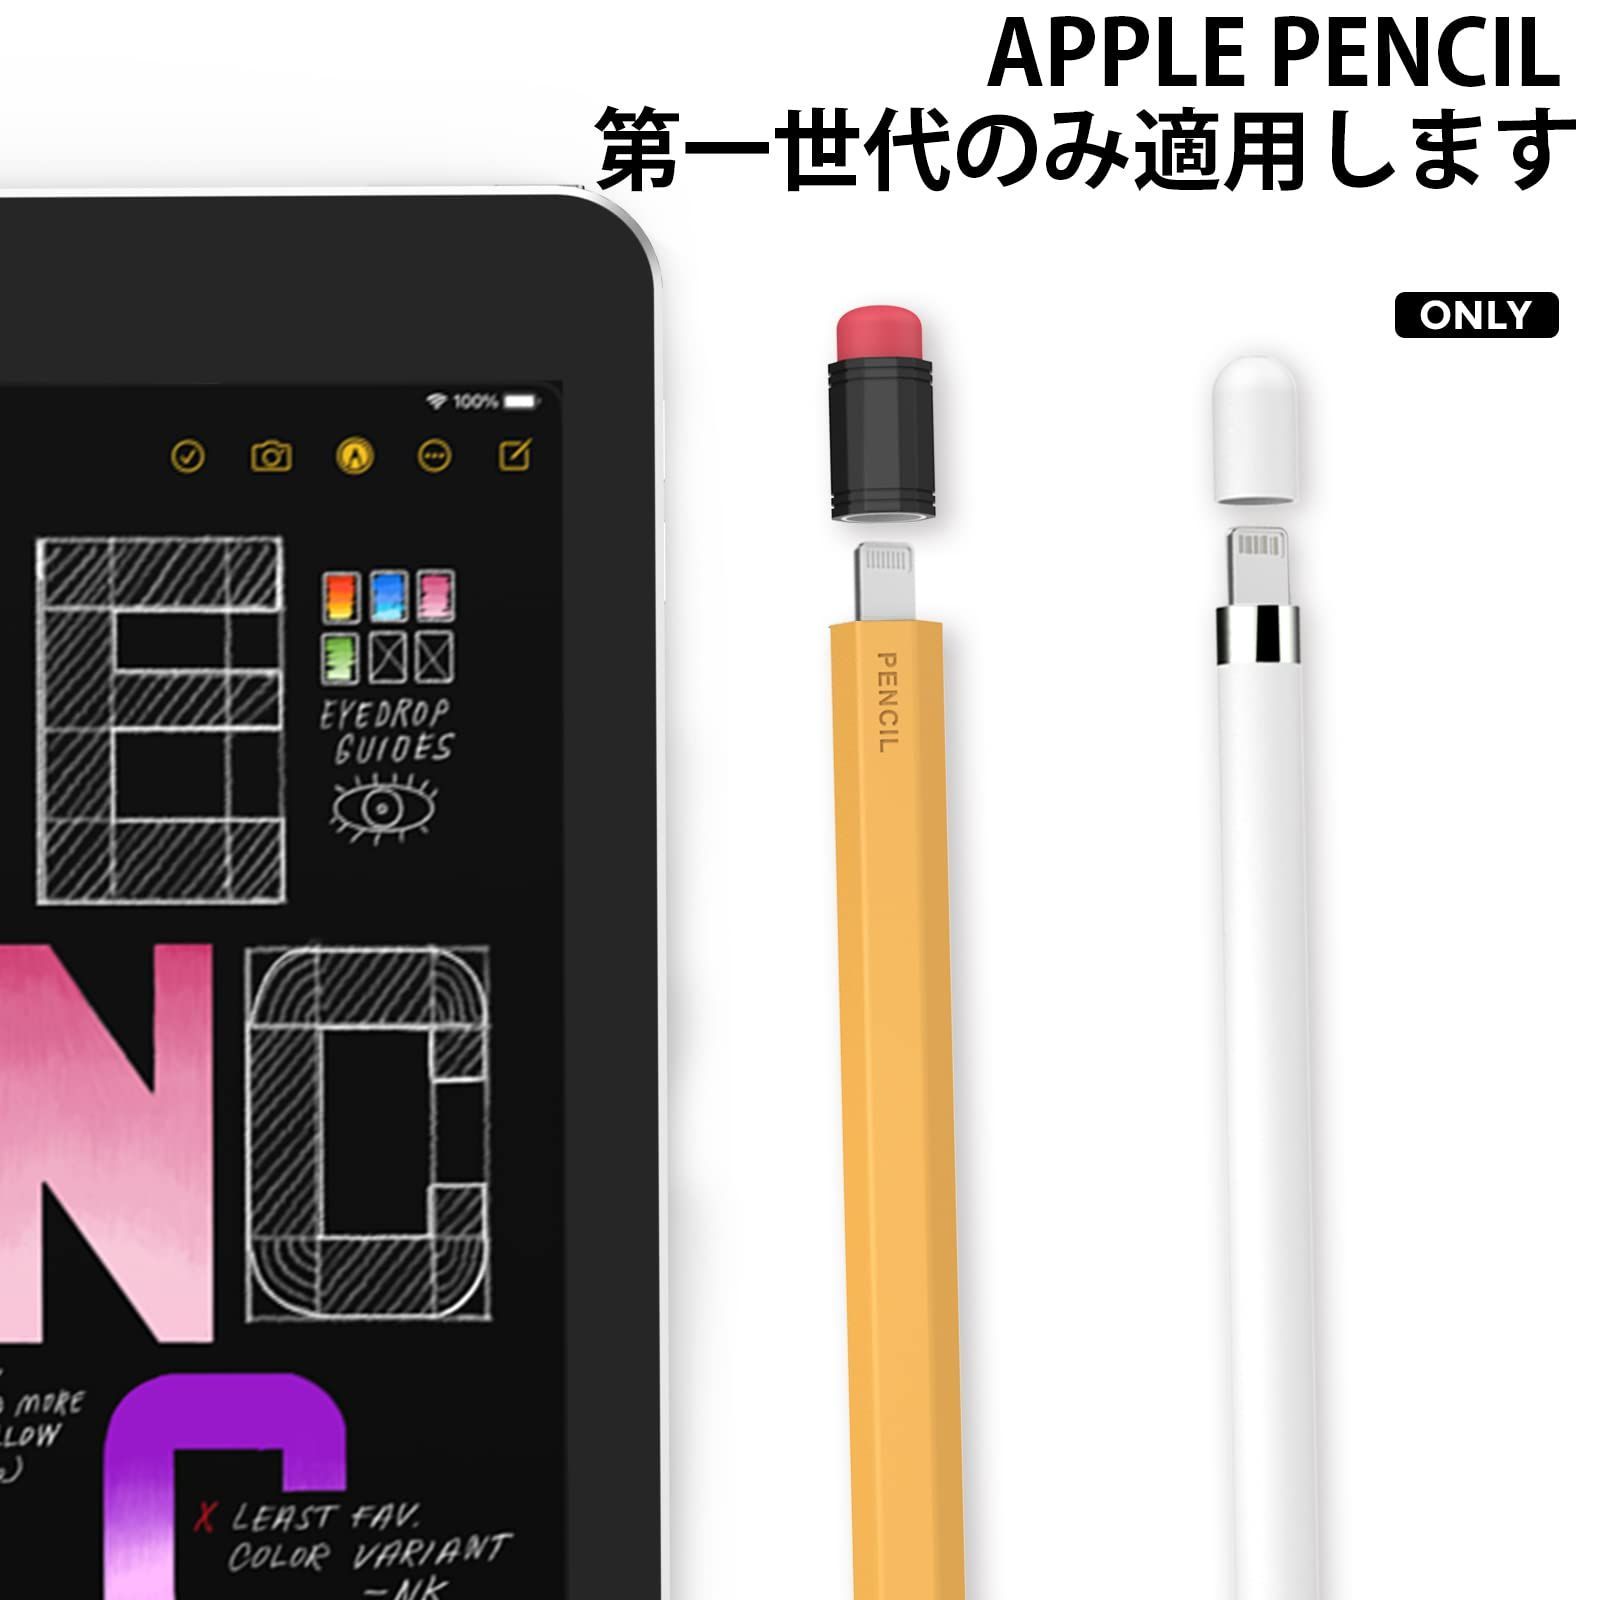 柔らかなシリコン材質 鉛筆レトロデザイン Apple Apple Pencil Pencil ...